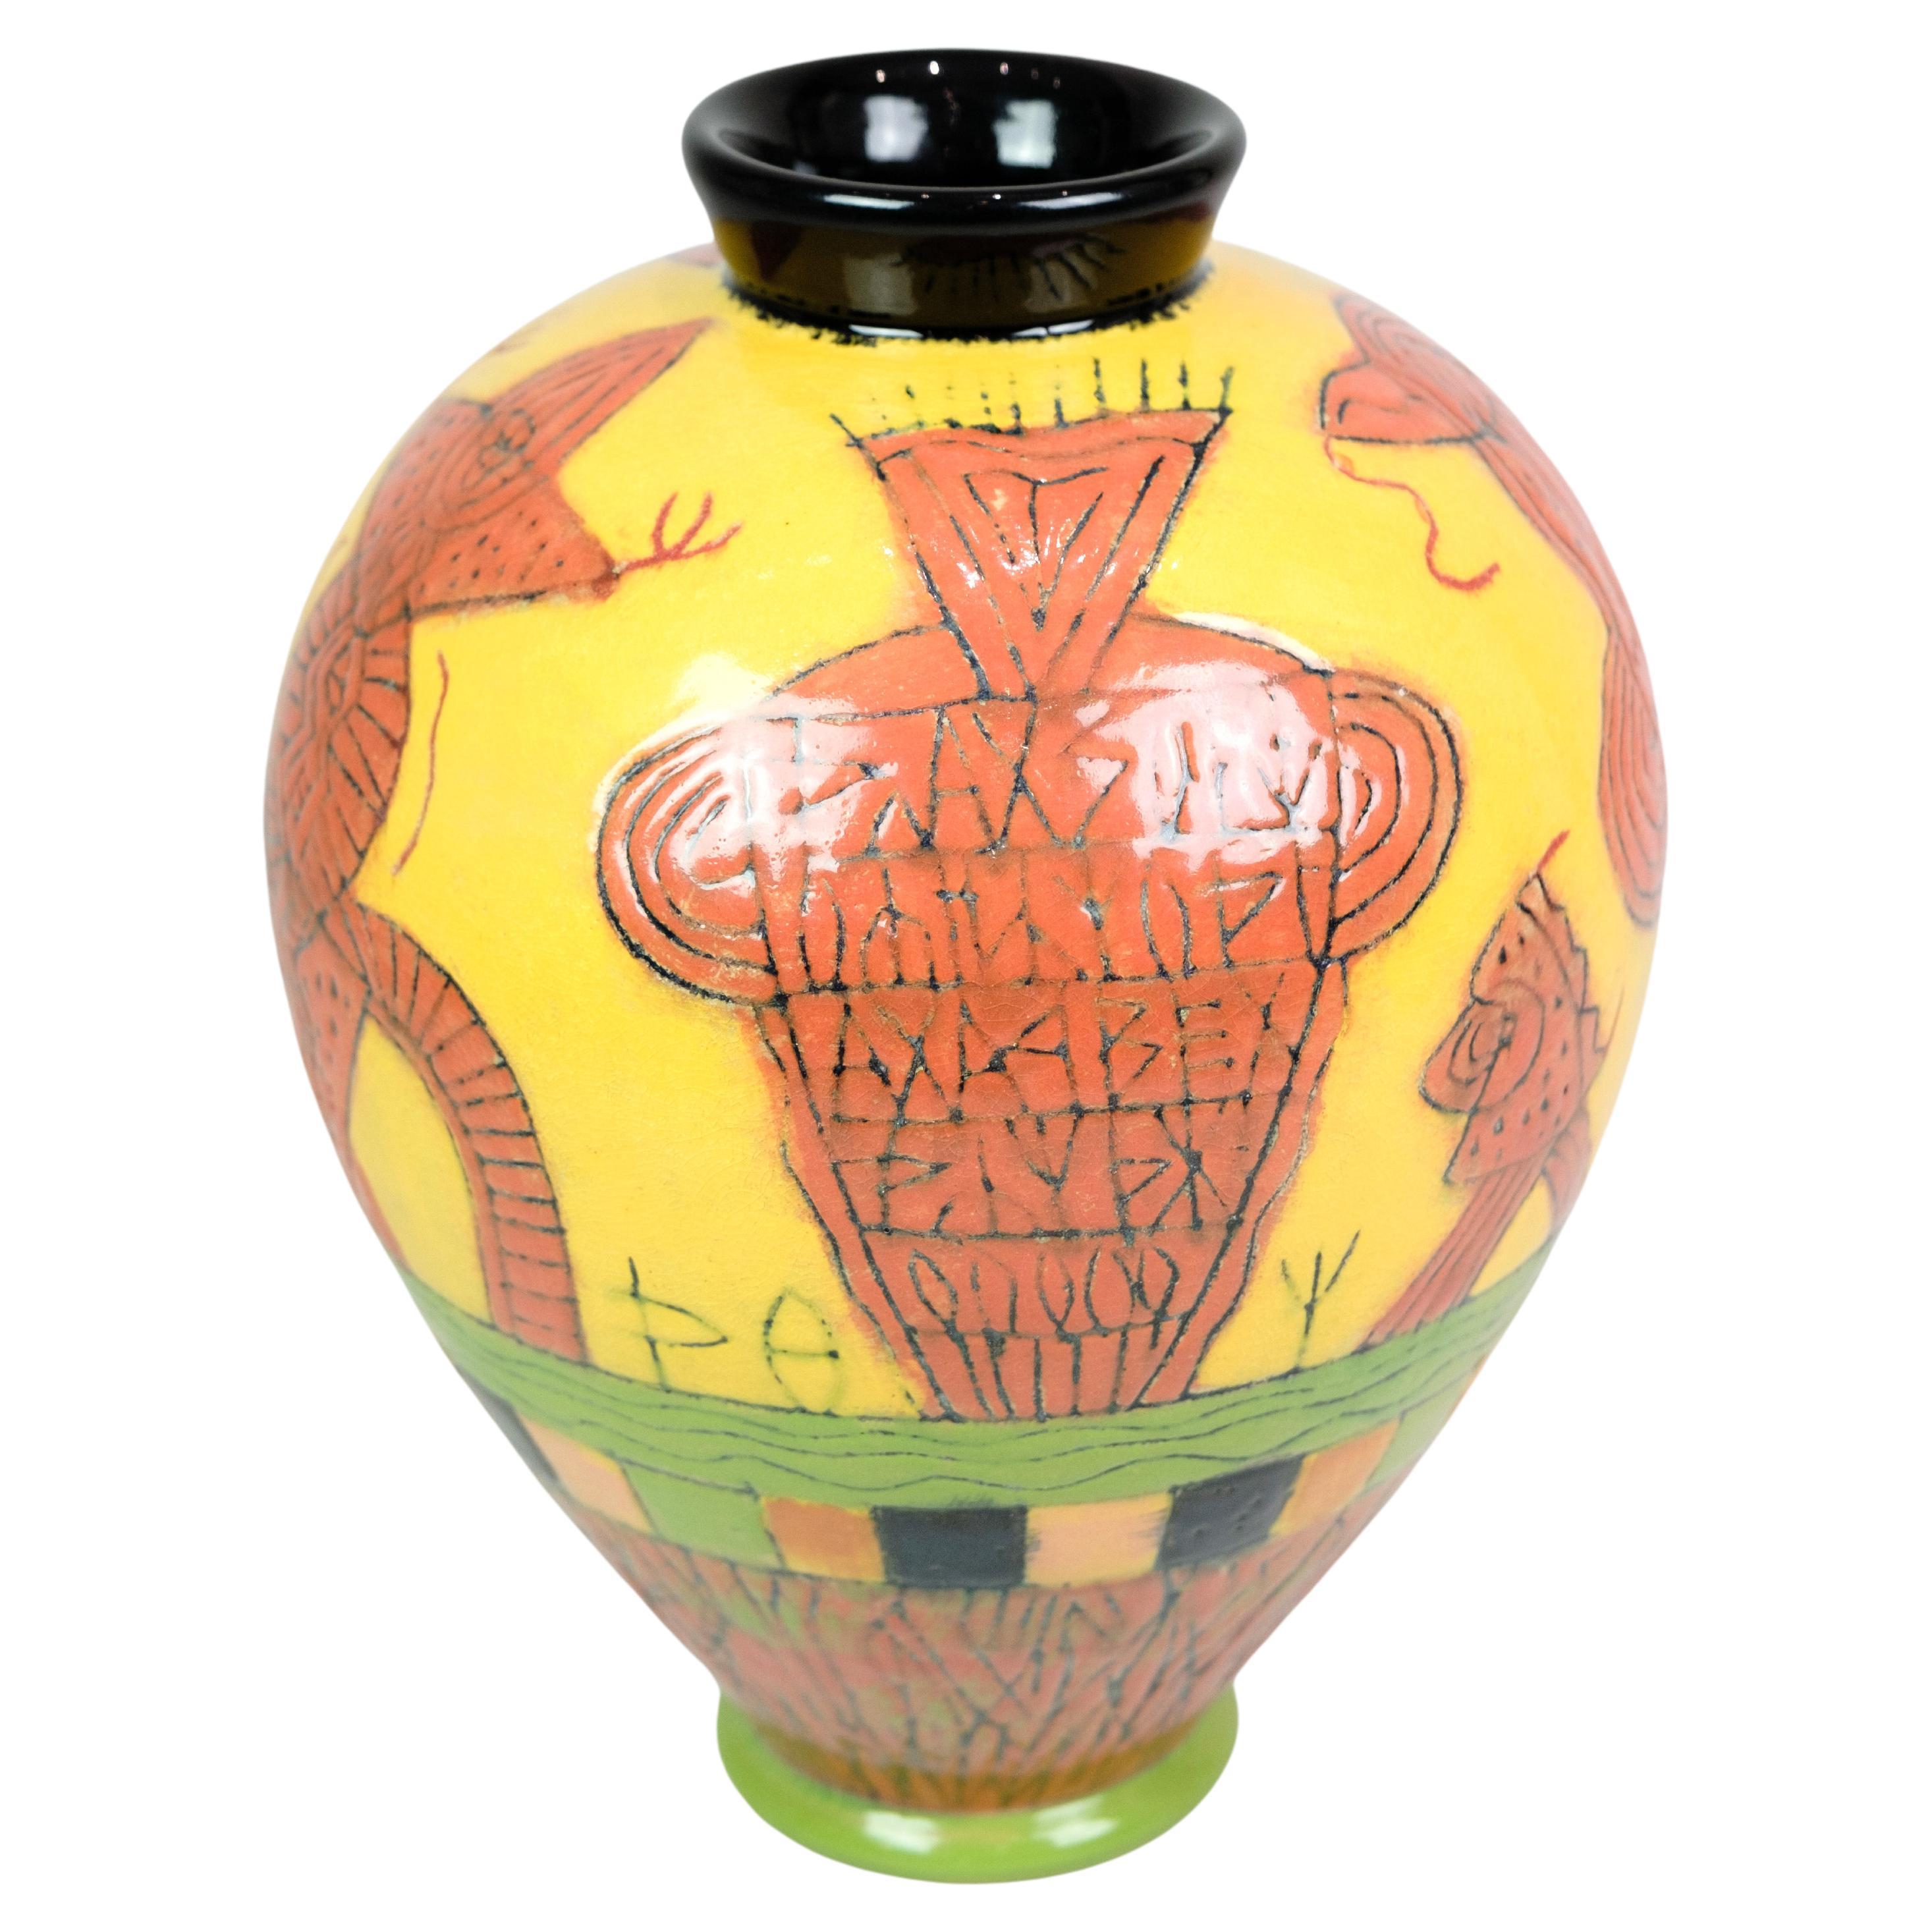 Eine farbenfrohe, handbemalte Vase, entworfen und signiert von Lene Regius